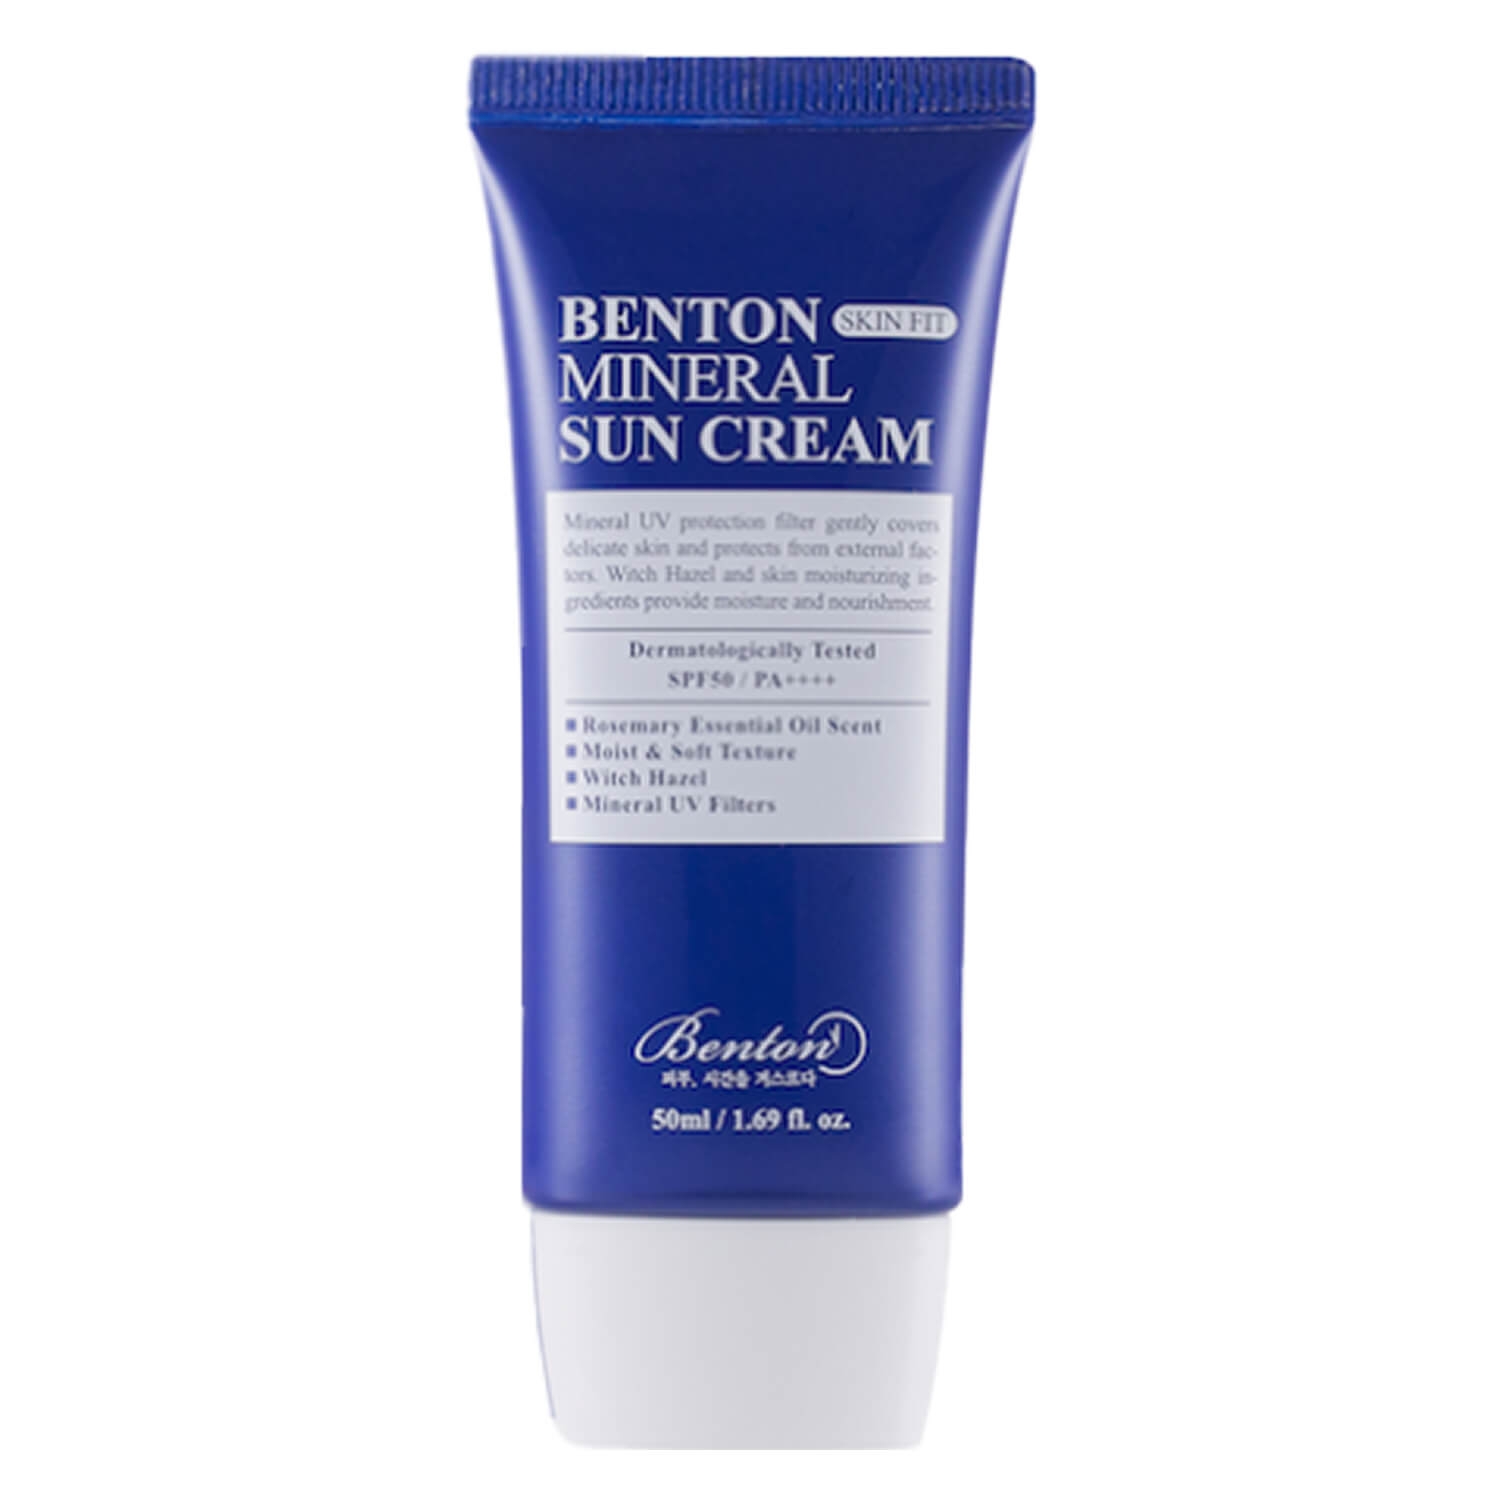 Produktbild von Benton - Skin Fit Mineral Sun Cream SPF 50+